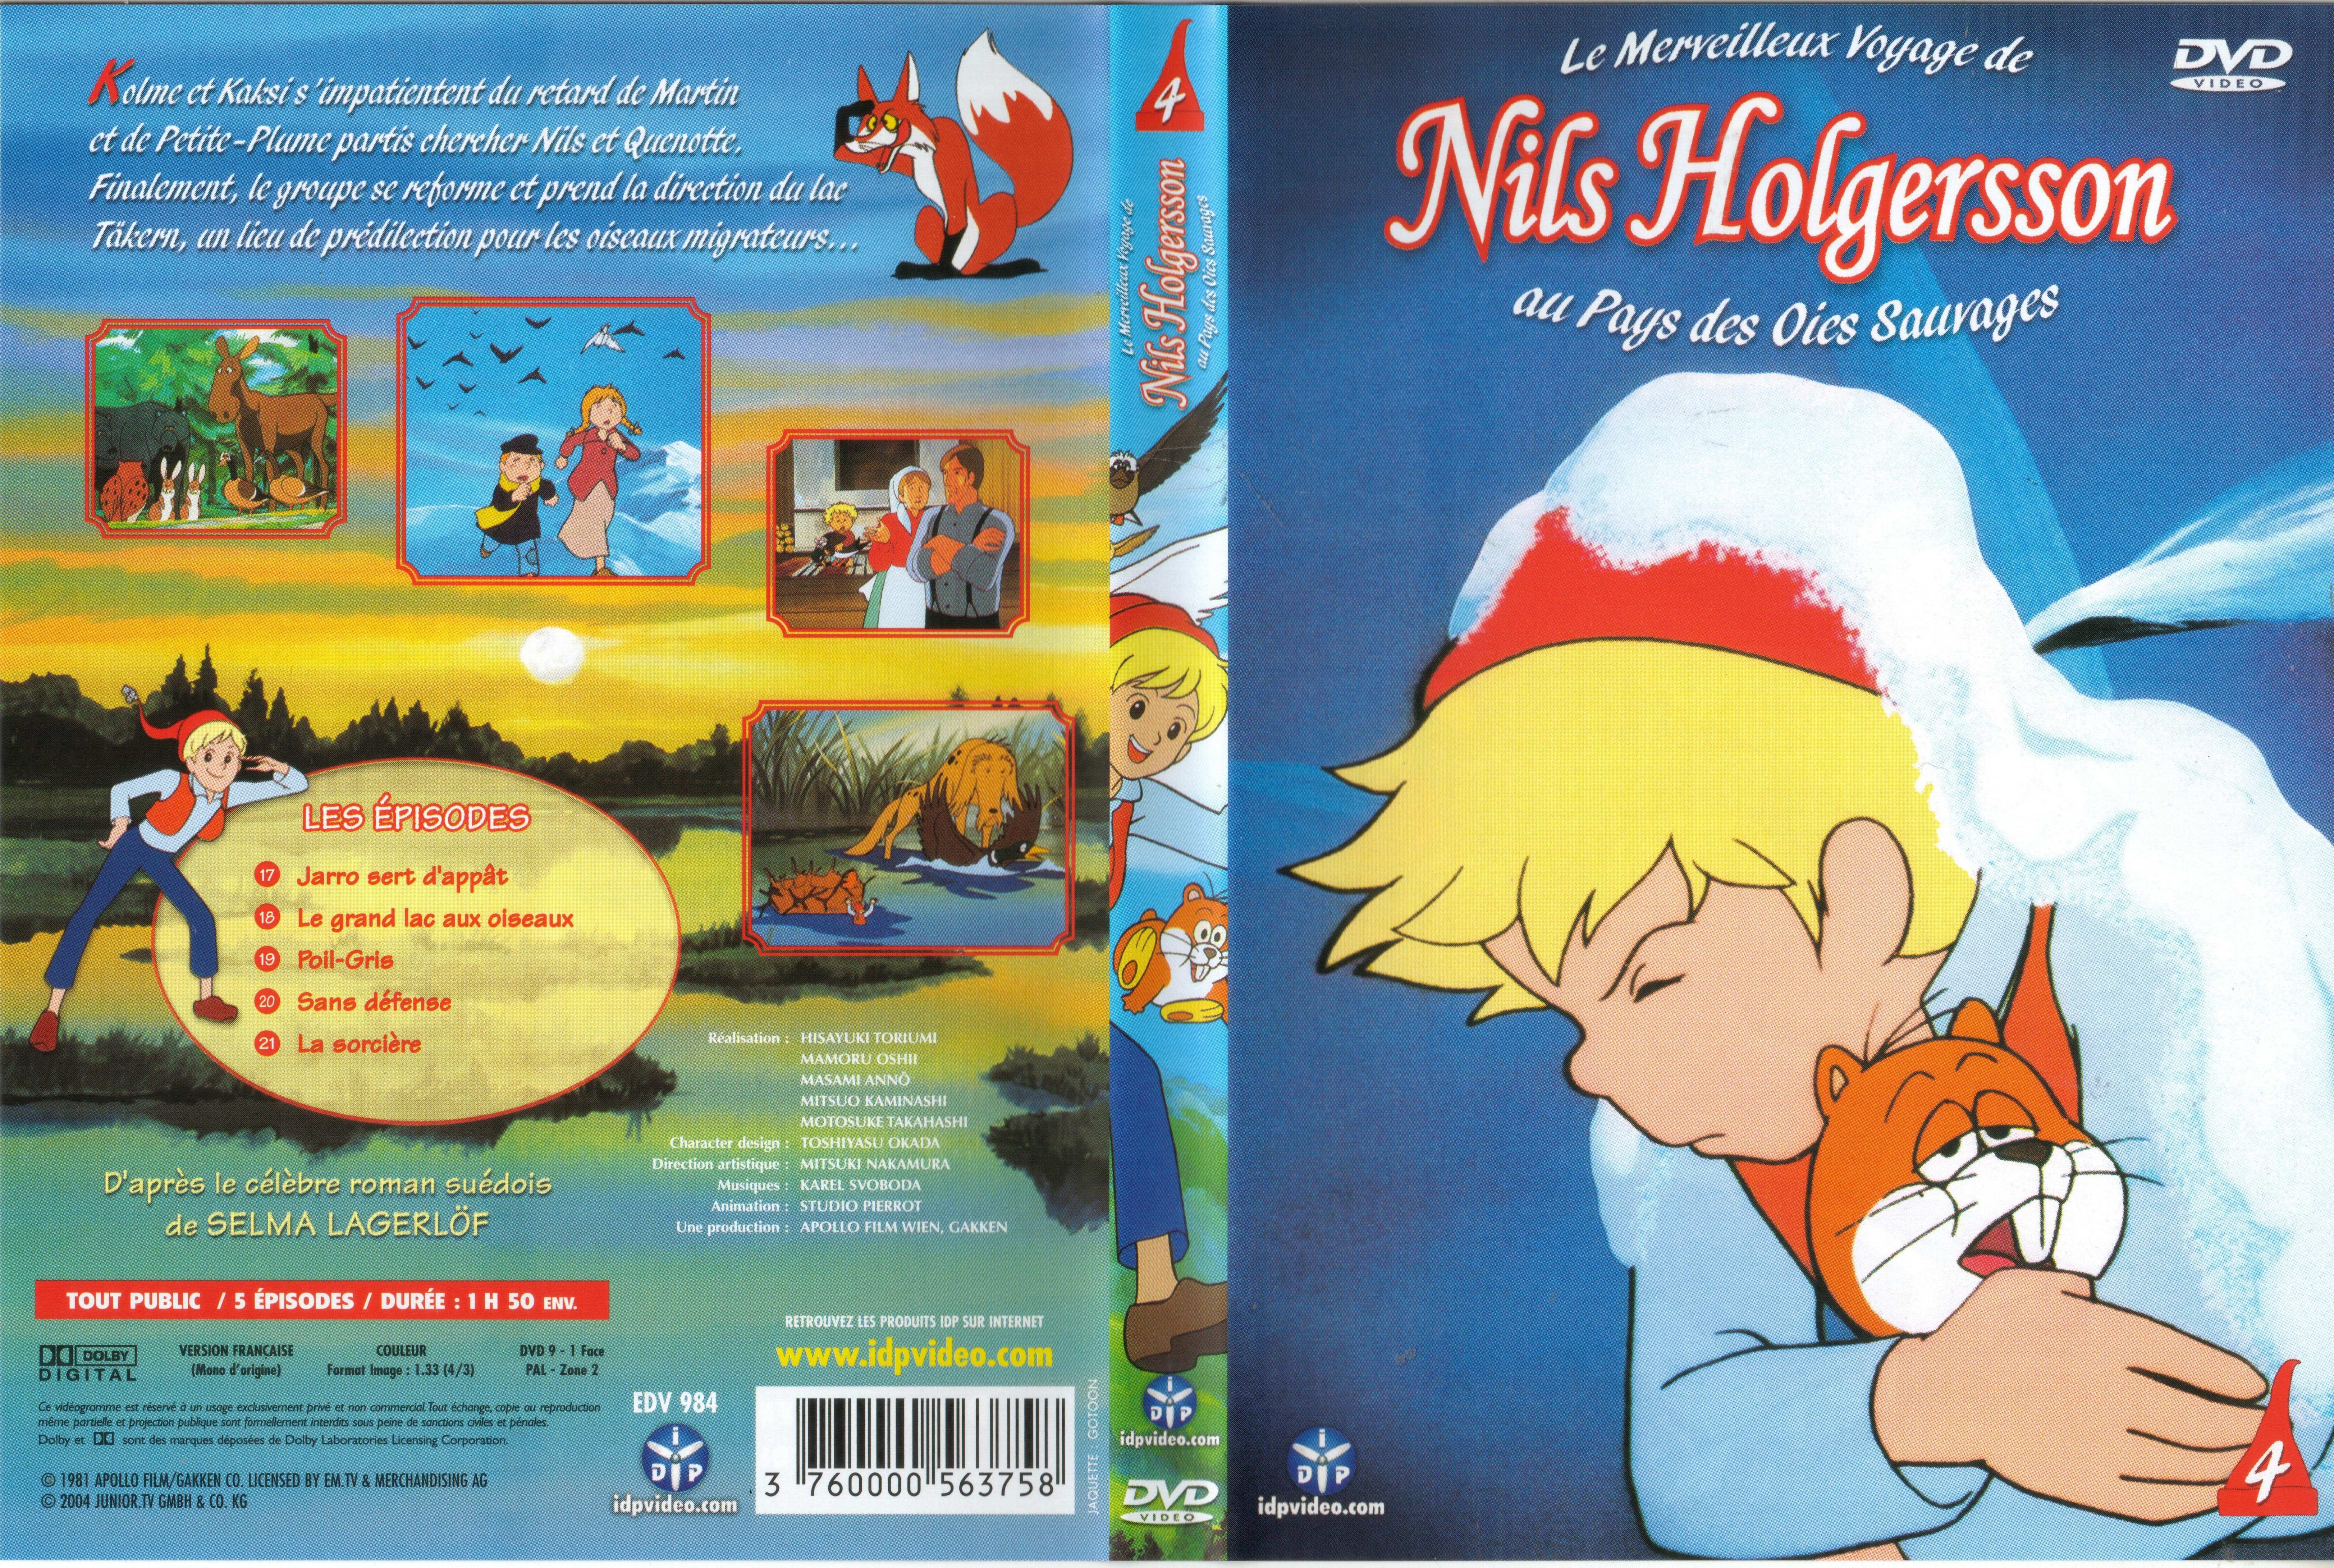 Jaquette DVD Nils Holgersson vol 04